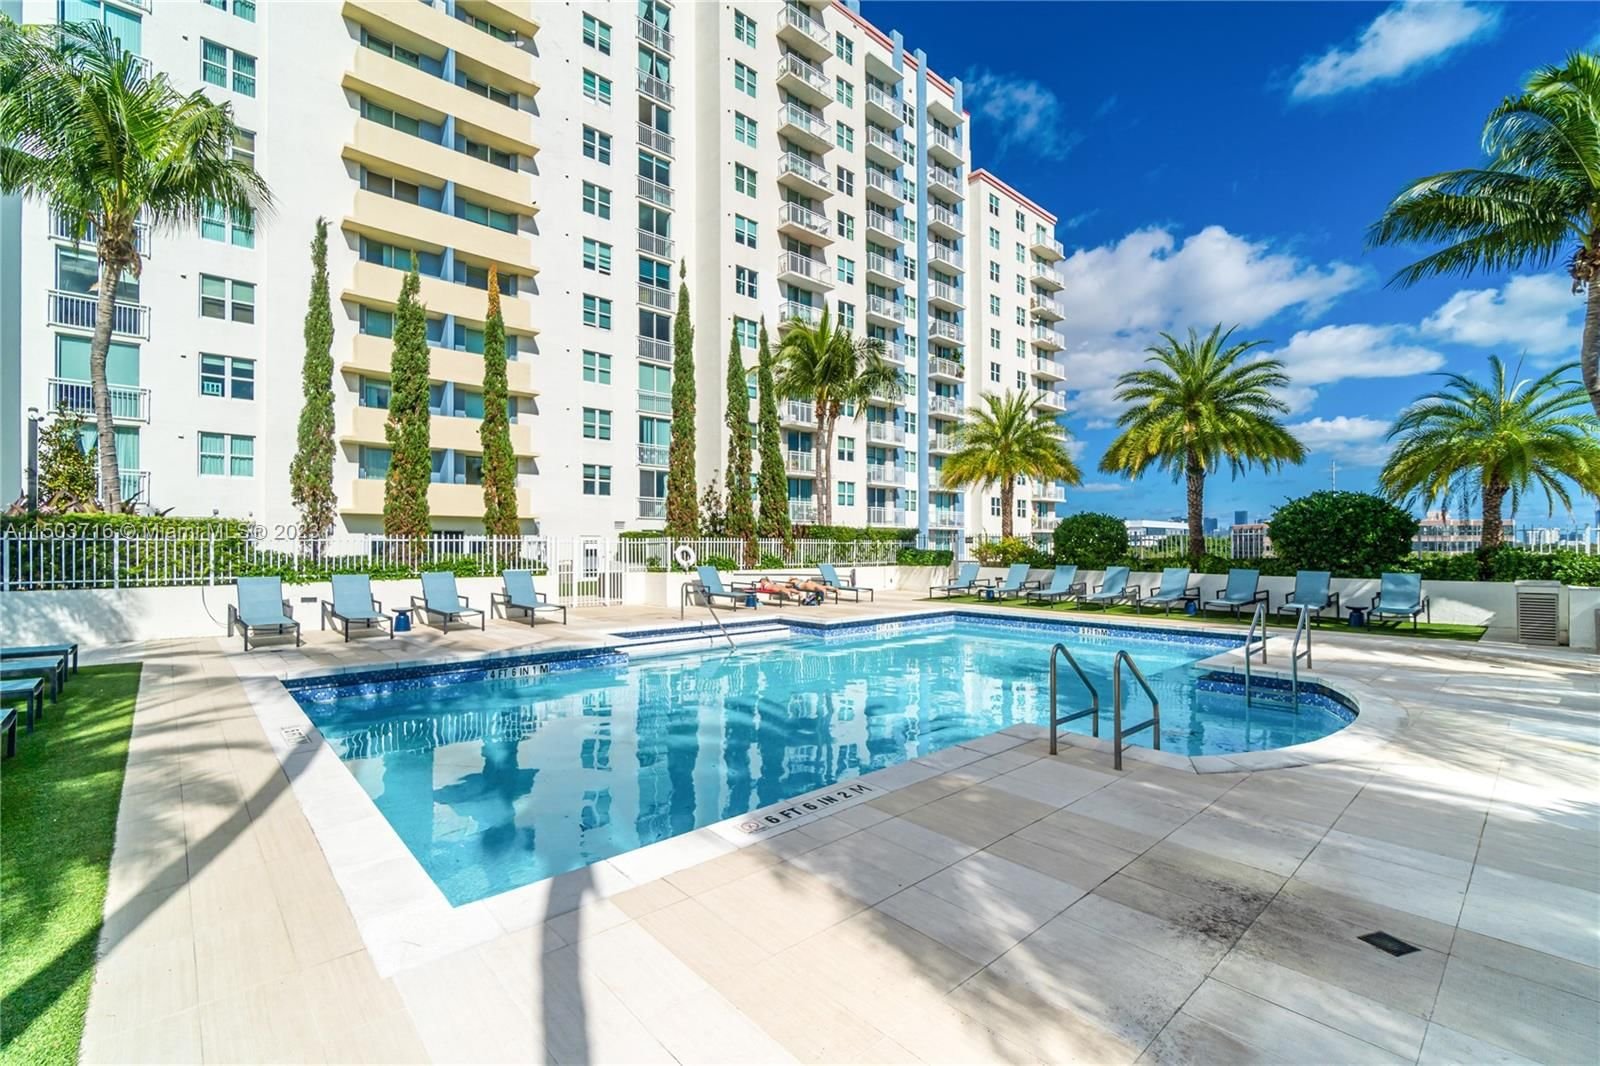 Real estate property located at 3000 Coral Way #1502, Miami-Dade County, THE ASTON CONDO, Miami, FL